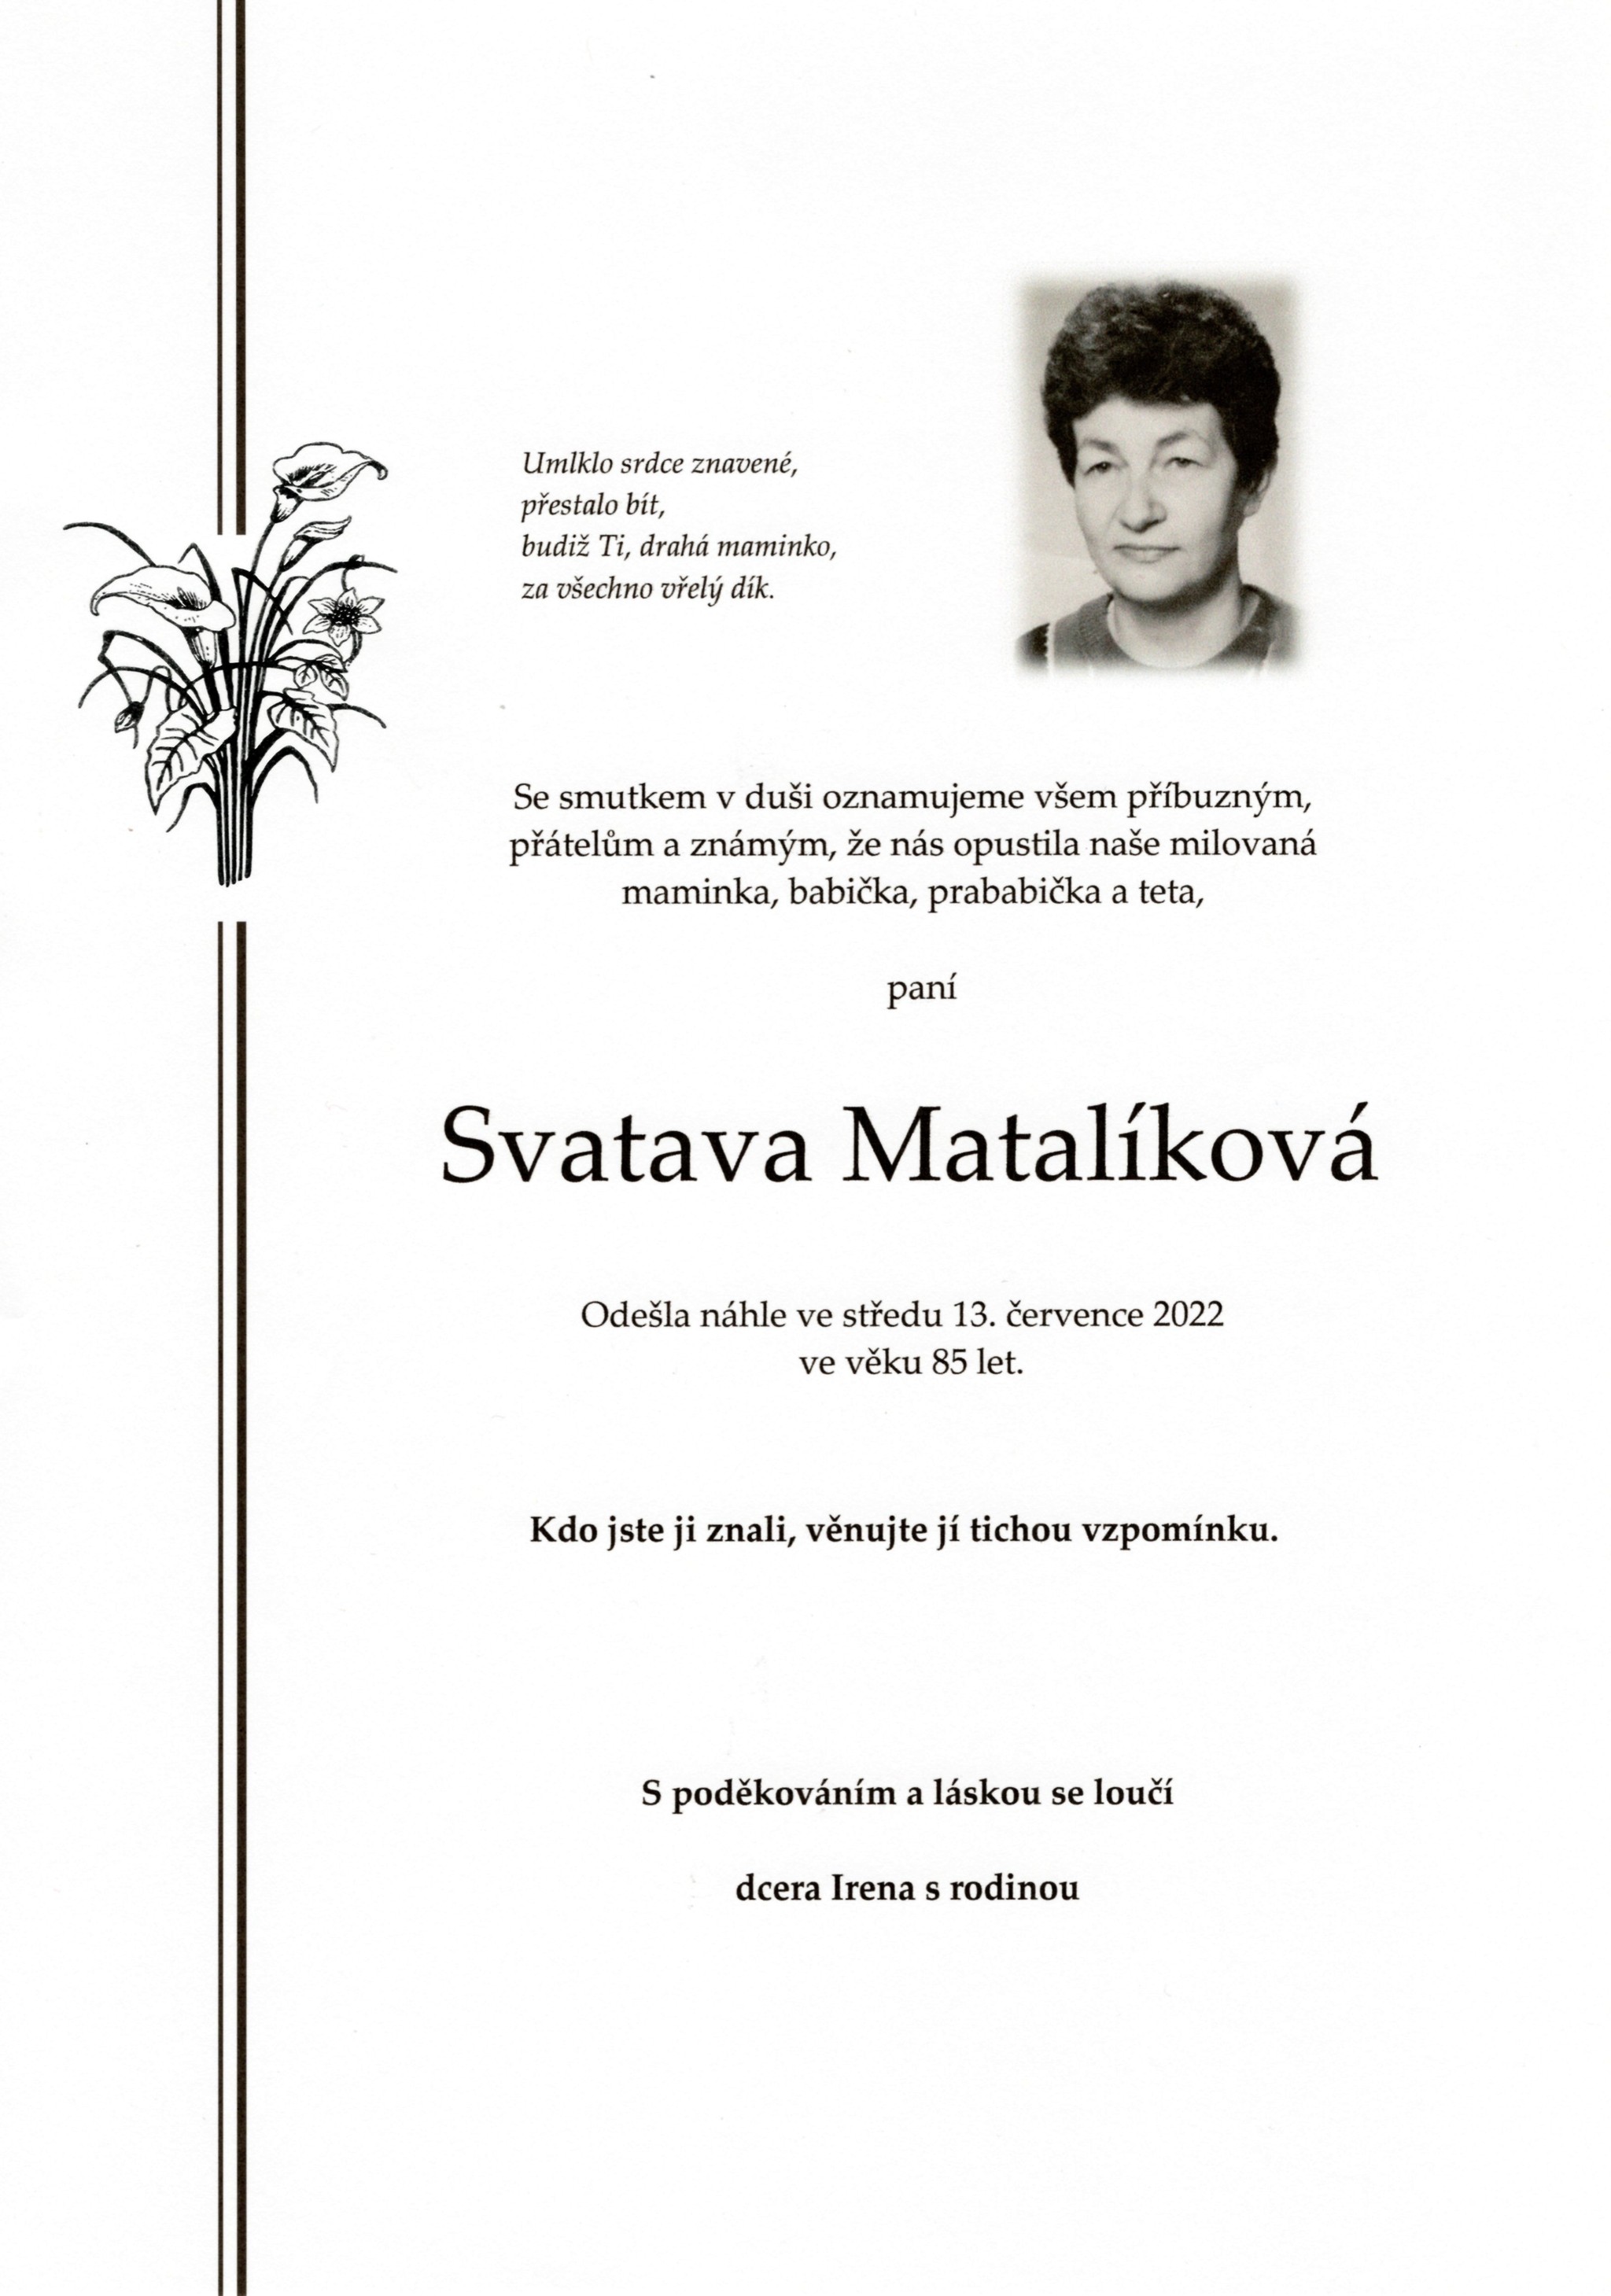 Svatava Matalíková